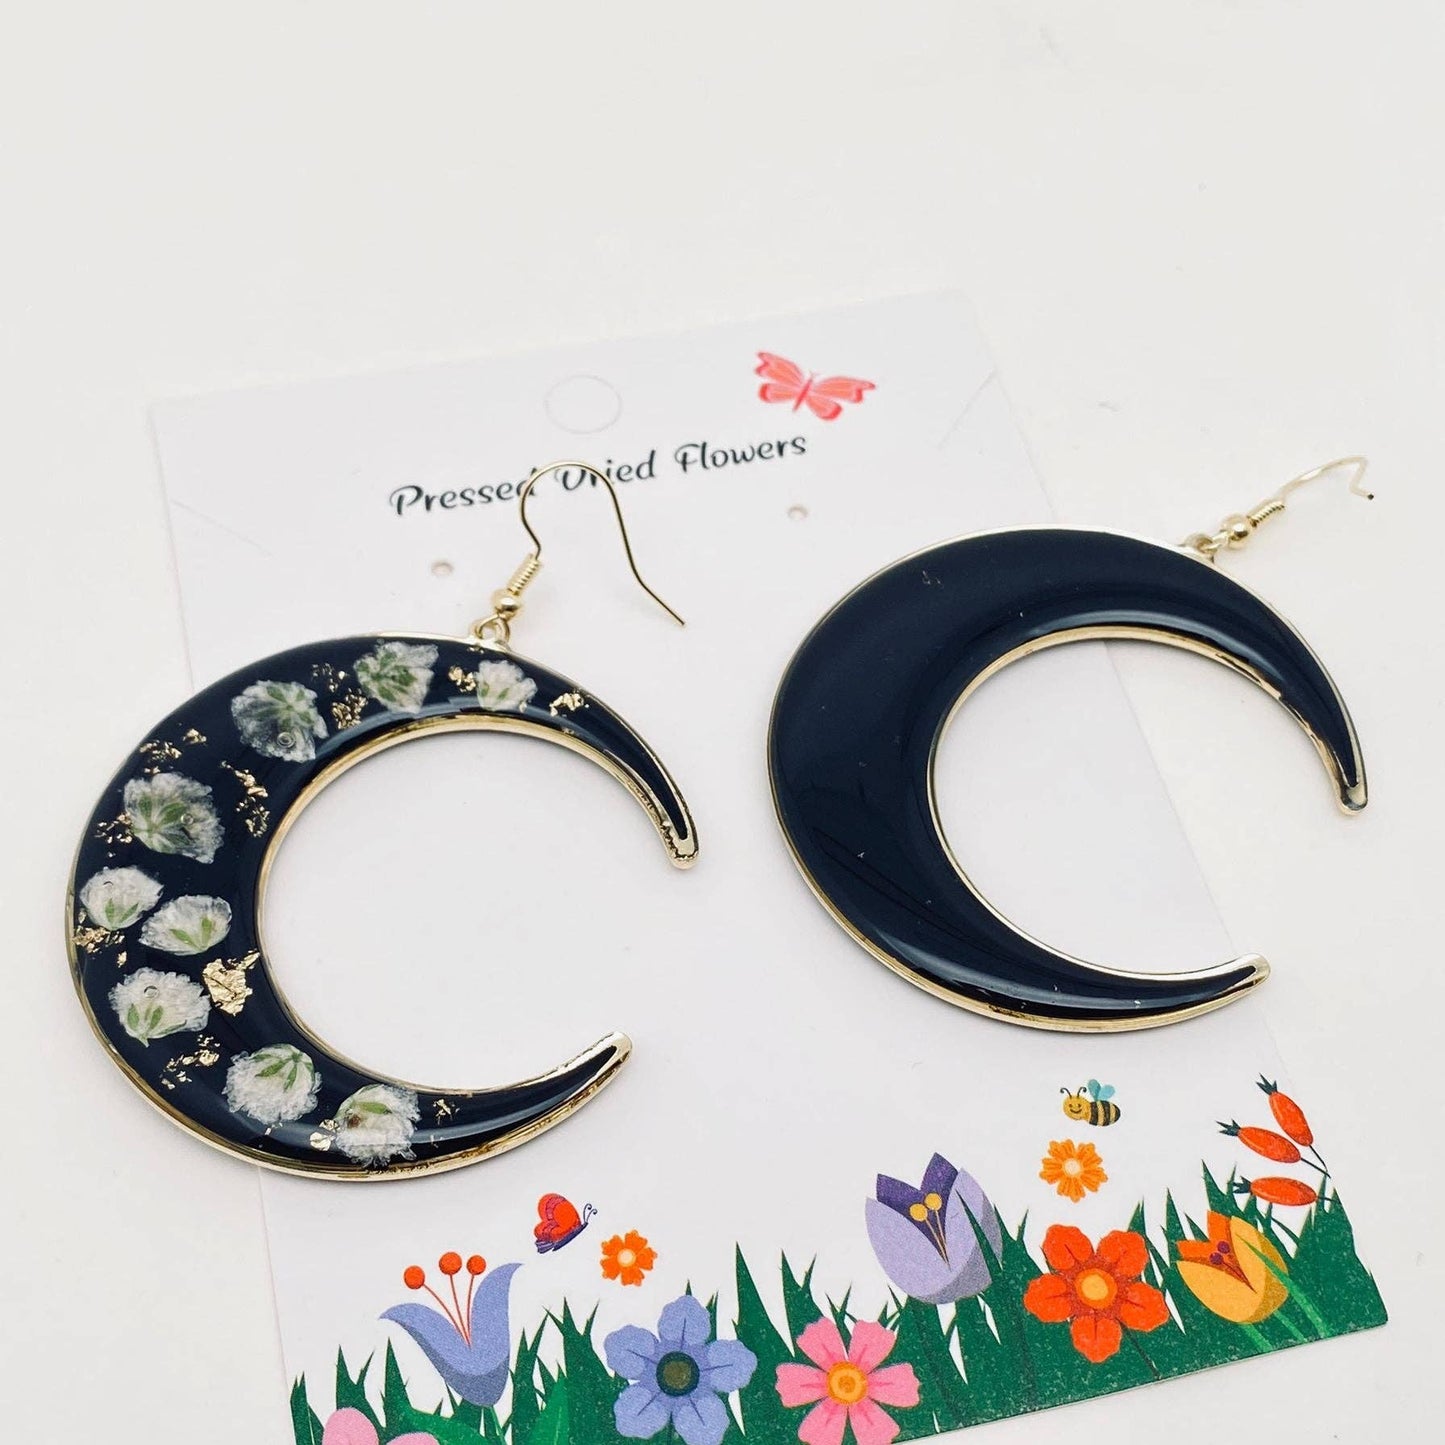 Dried Flower Black Moon Earrings